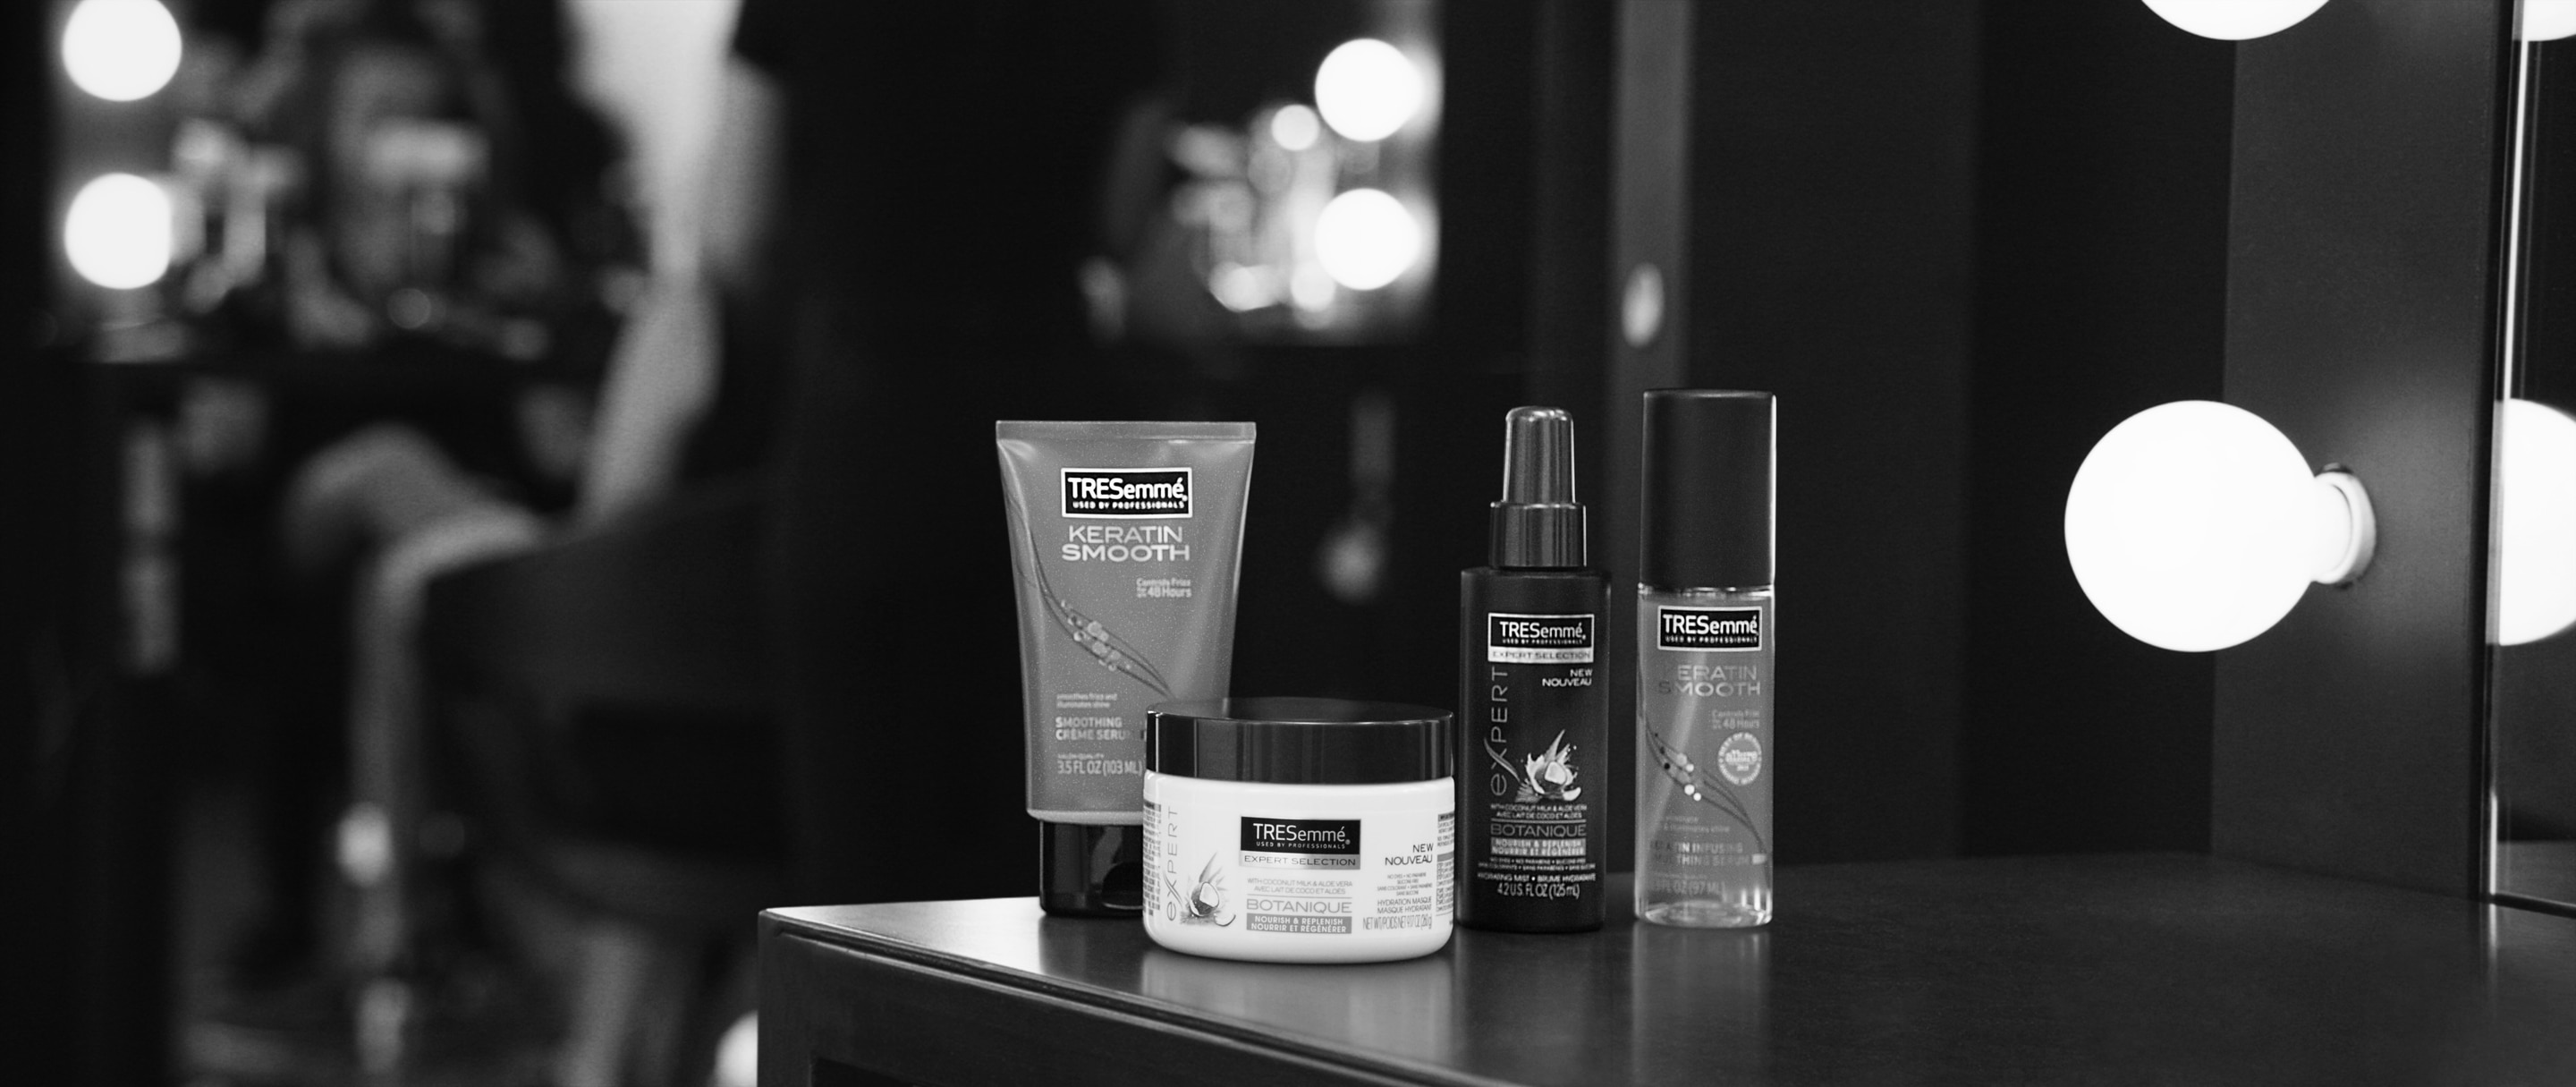 A selection of TRESemmé hair treatments, including hair masks and hair oils.